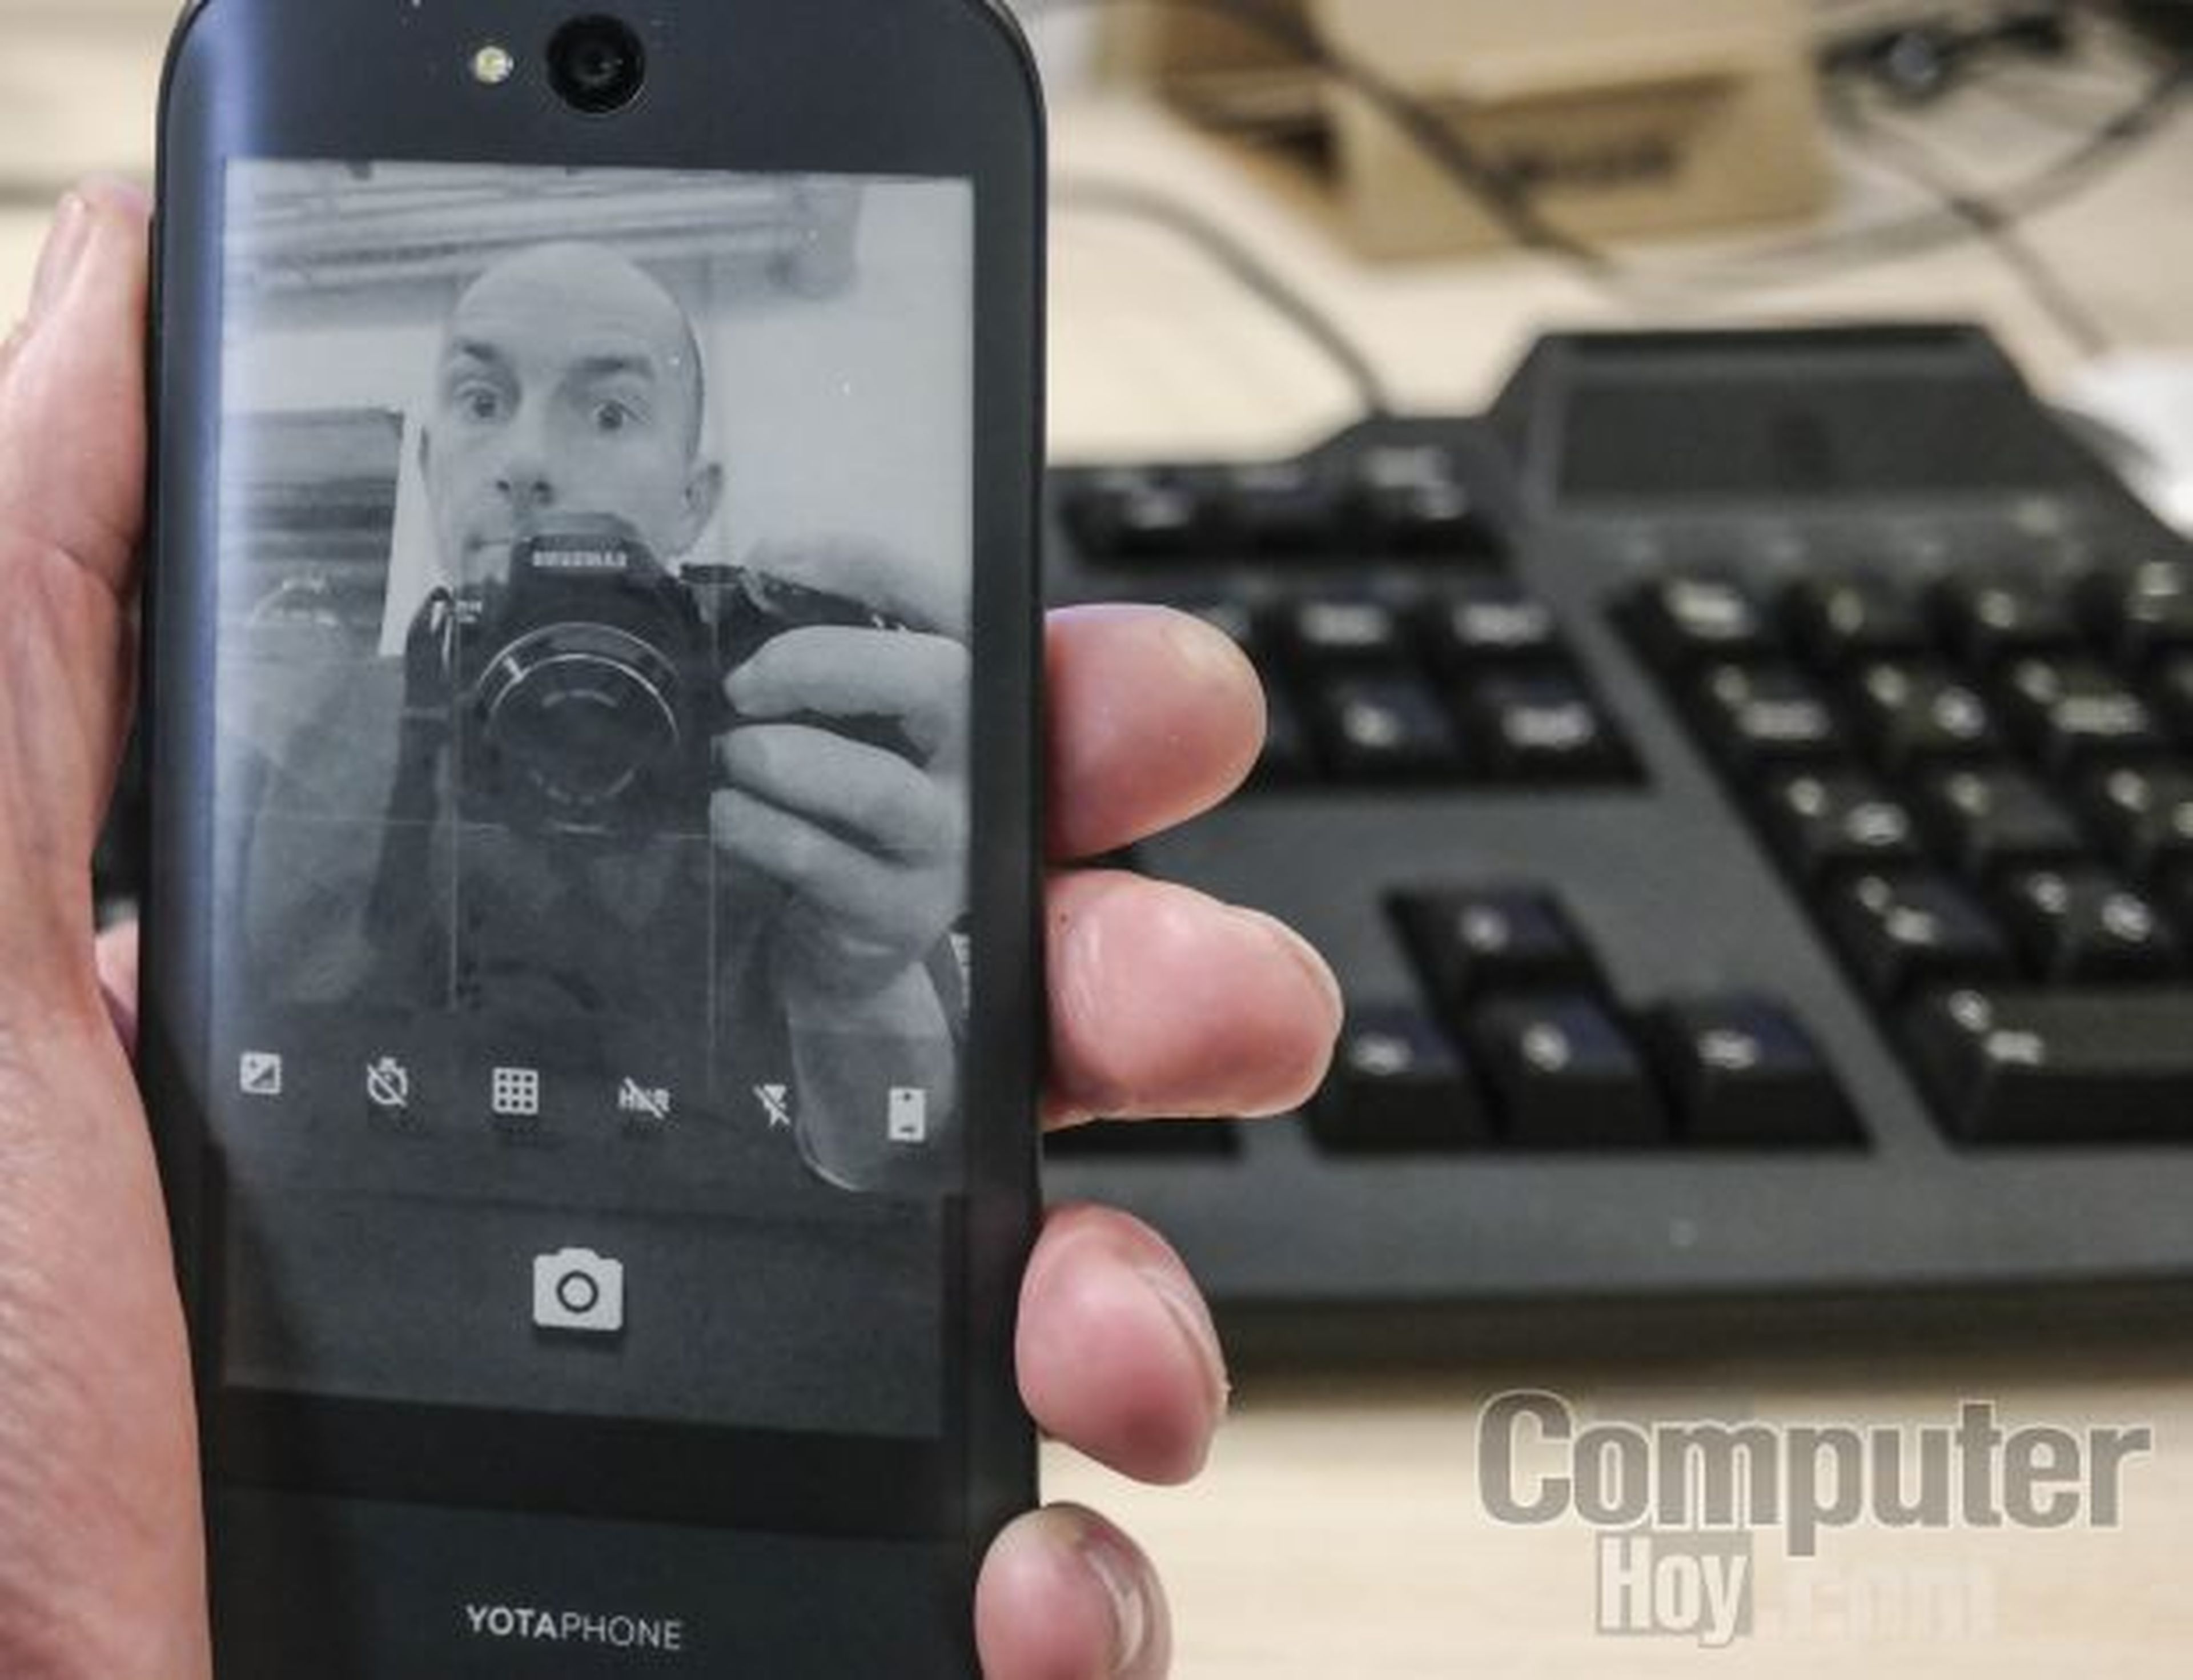 Las apps de la pantalla e-Ink en modo Mirror pasan por hacer selfies con total precisión